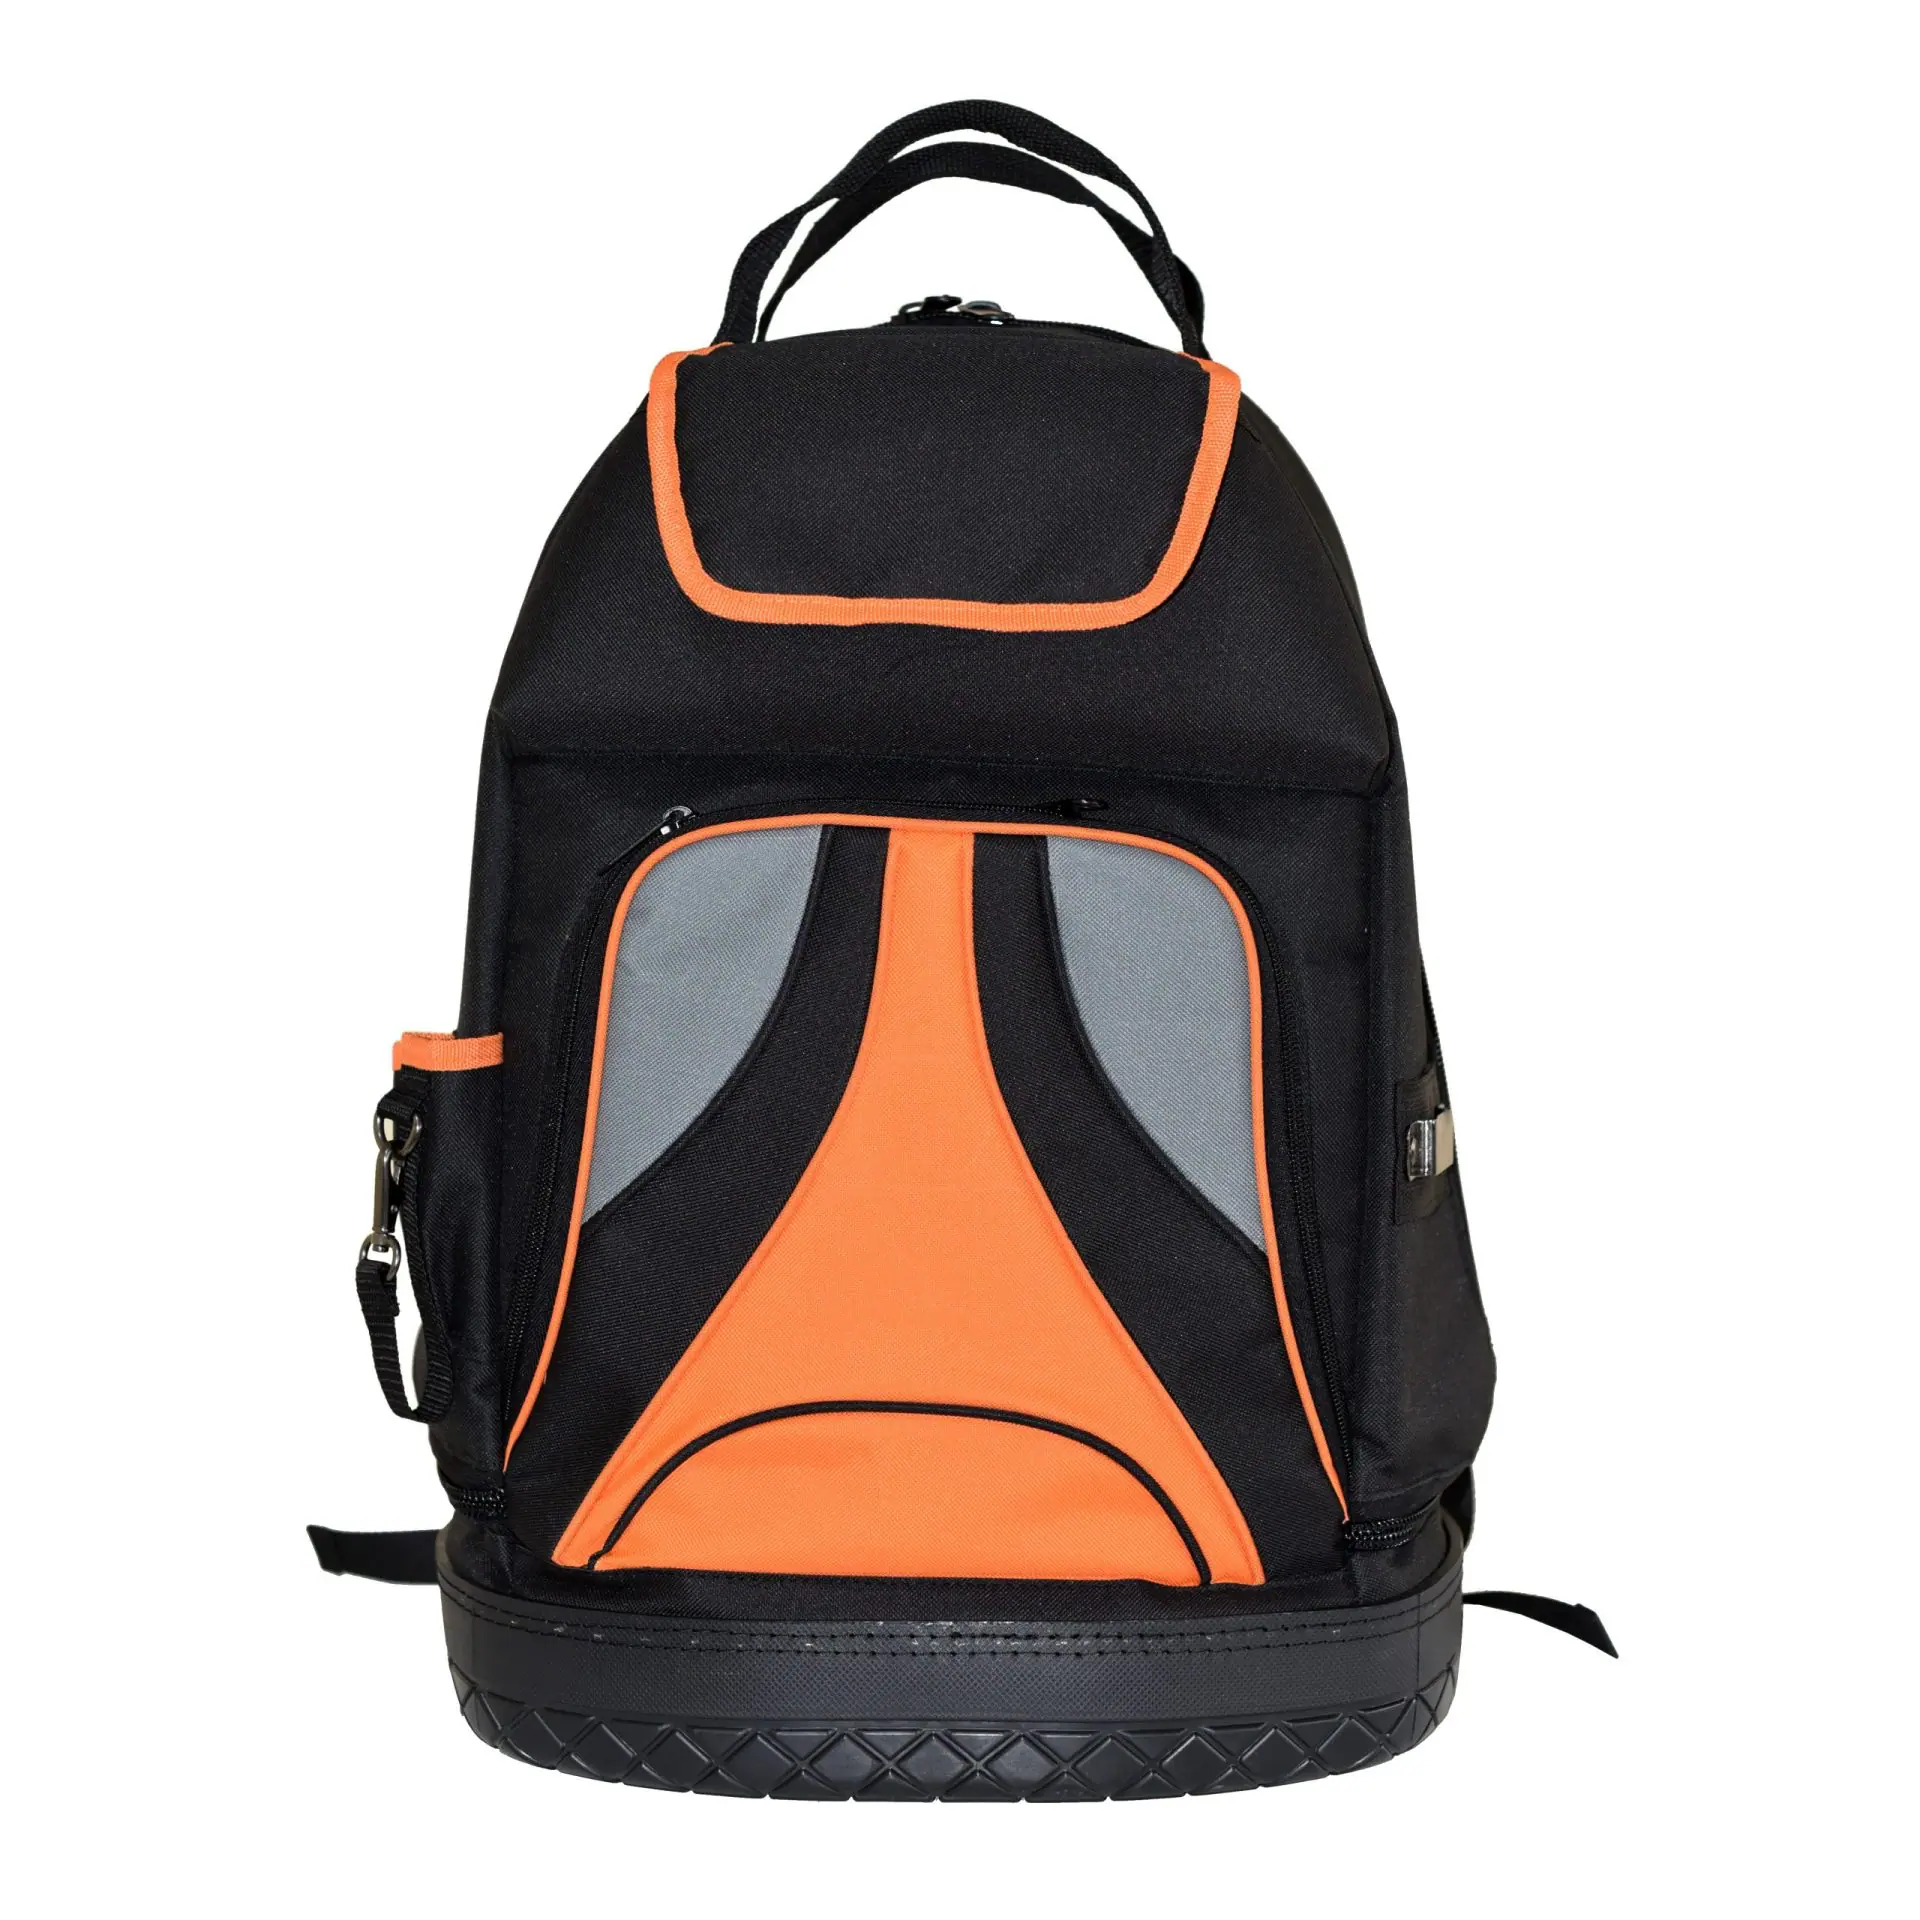 Tool-Backpack-